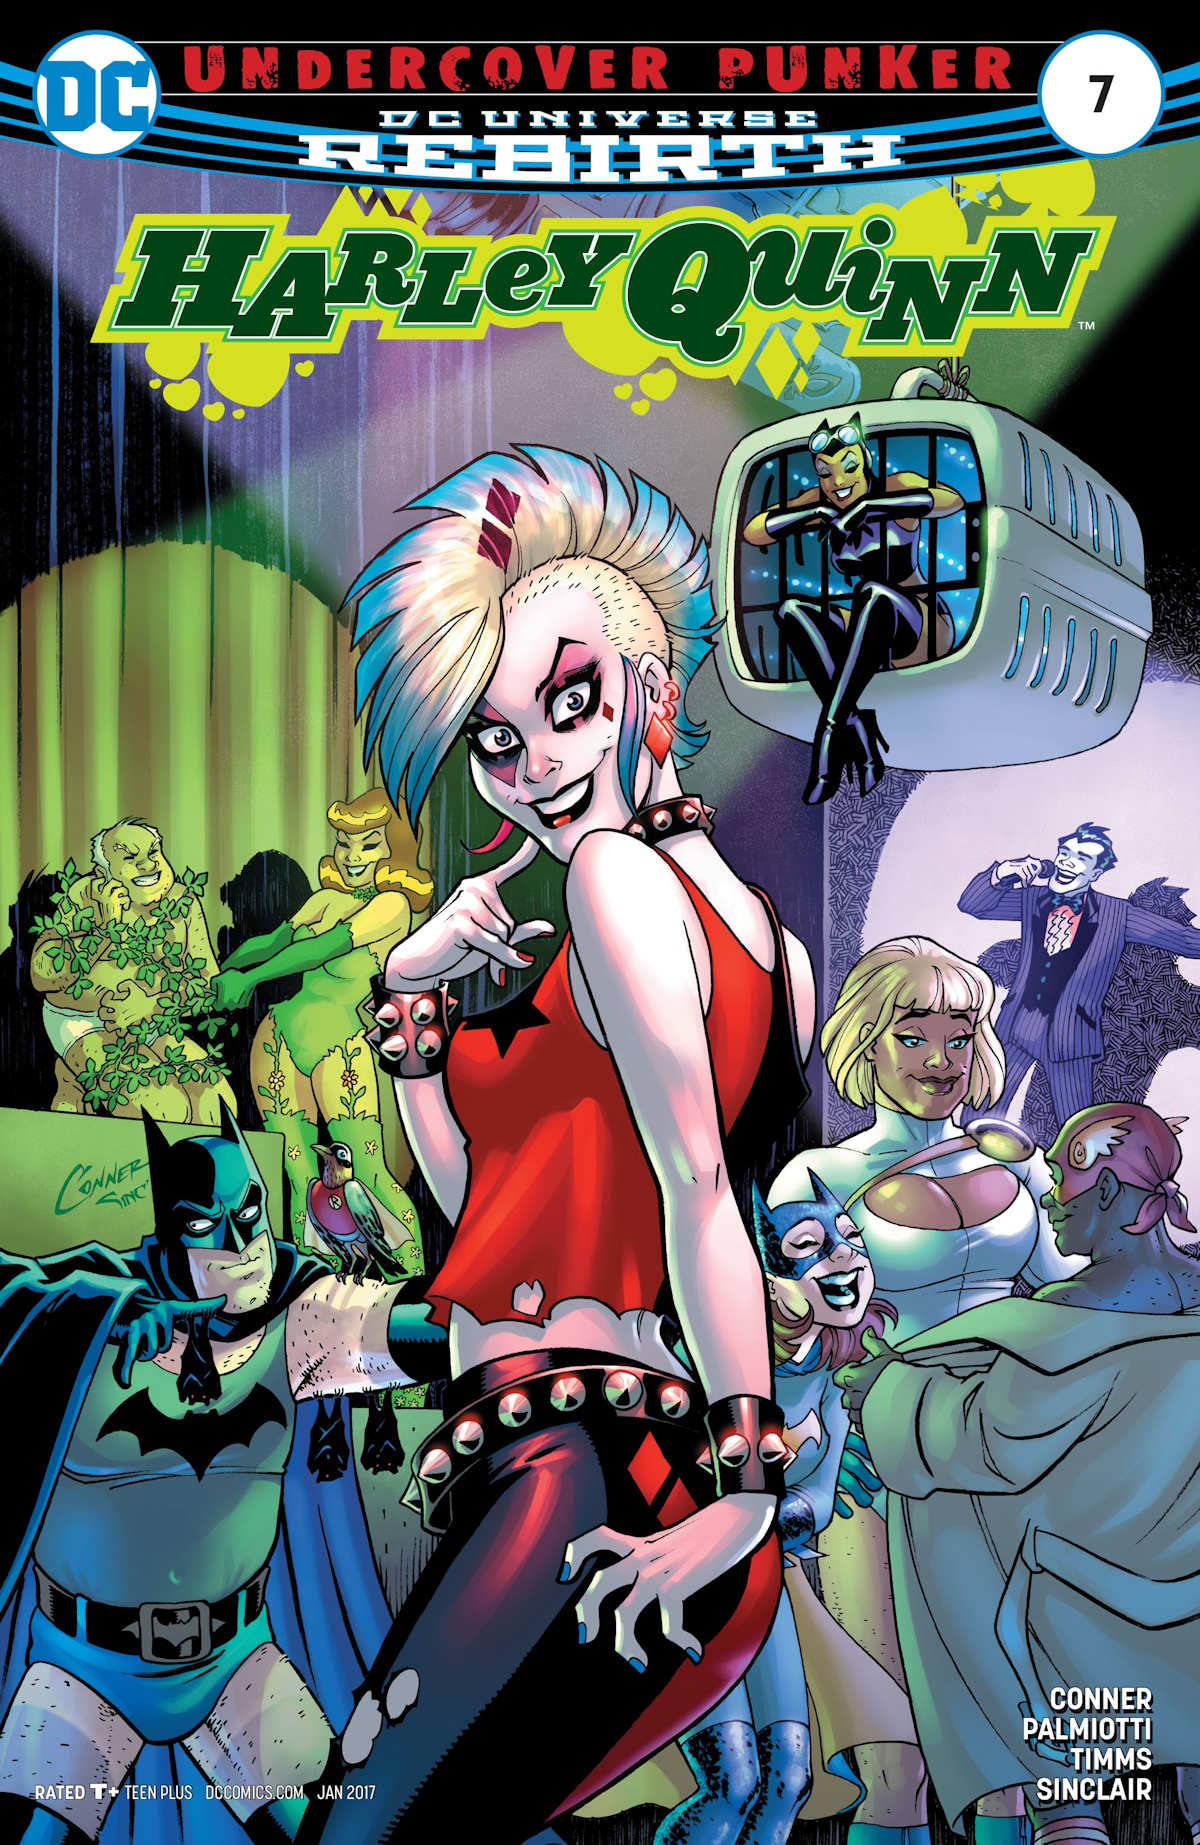 Harley Quinn Vol. 3 7 (Cover A)